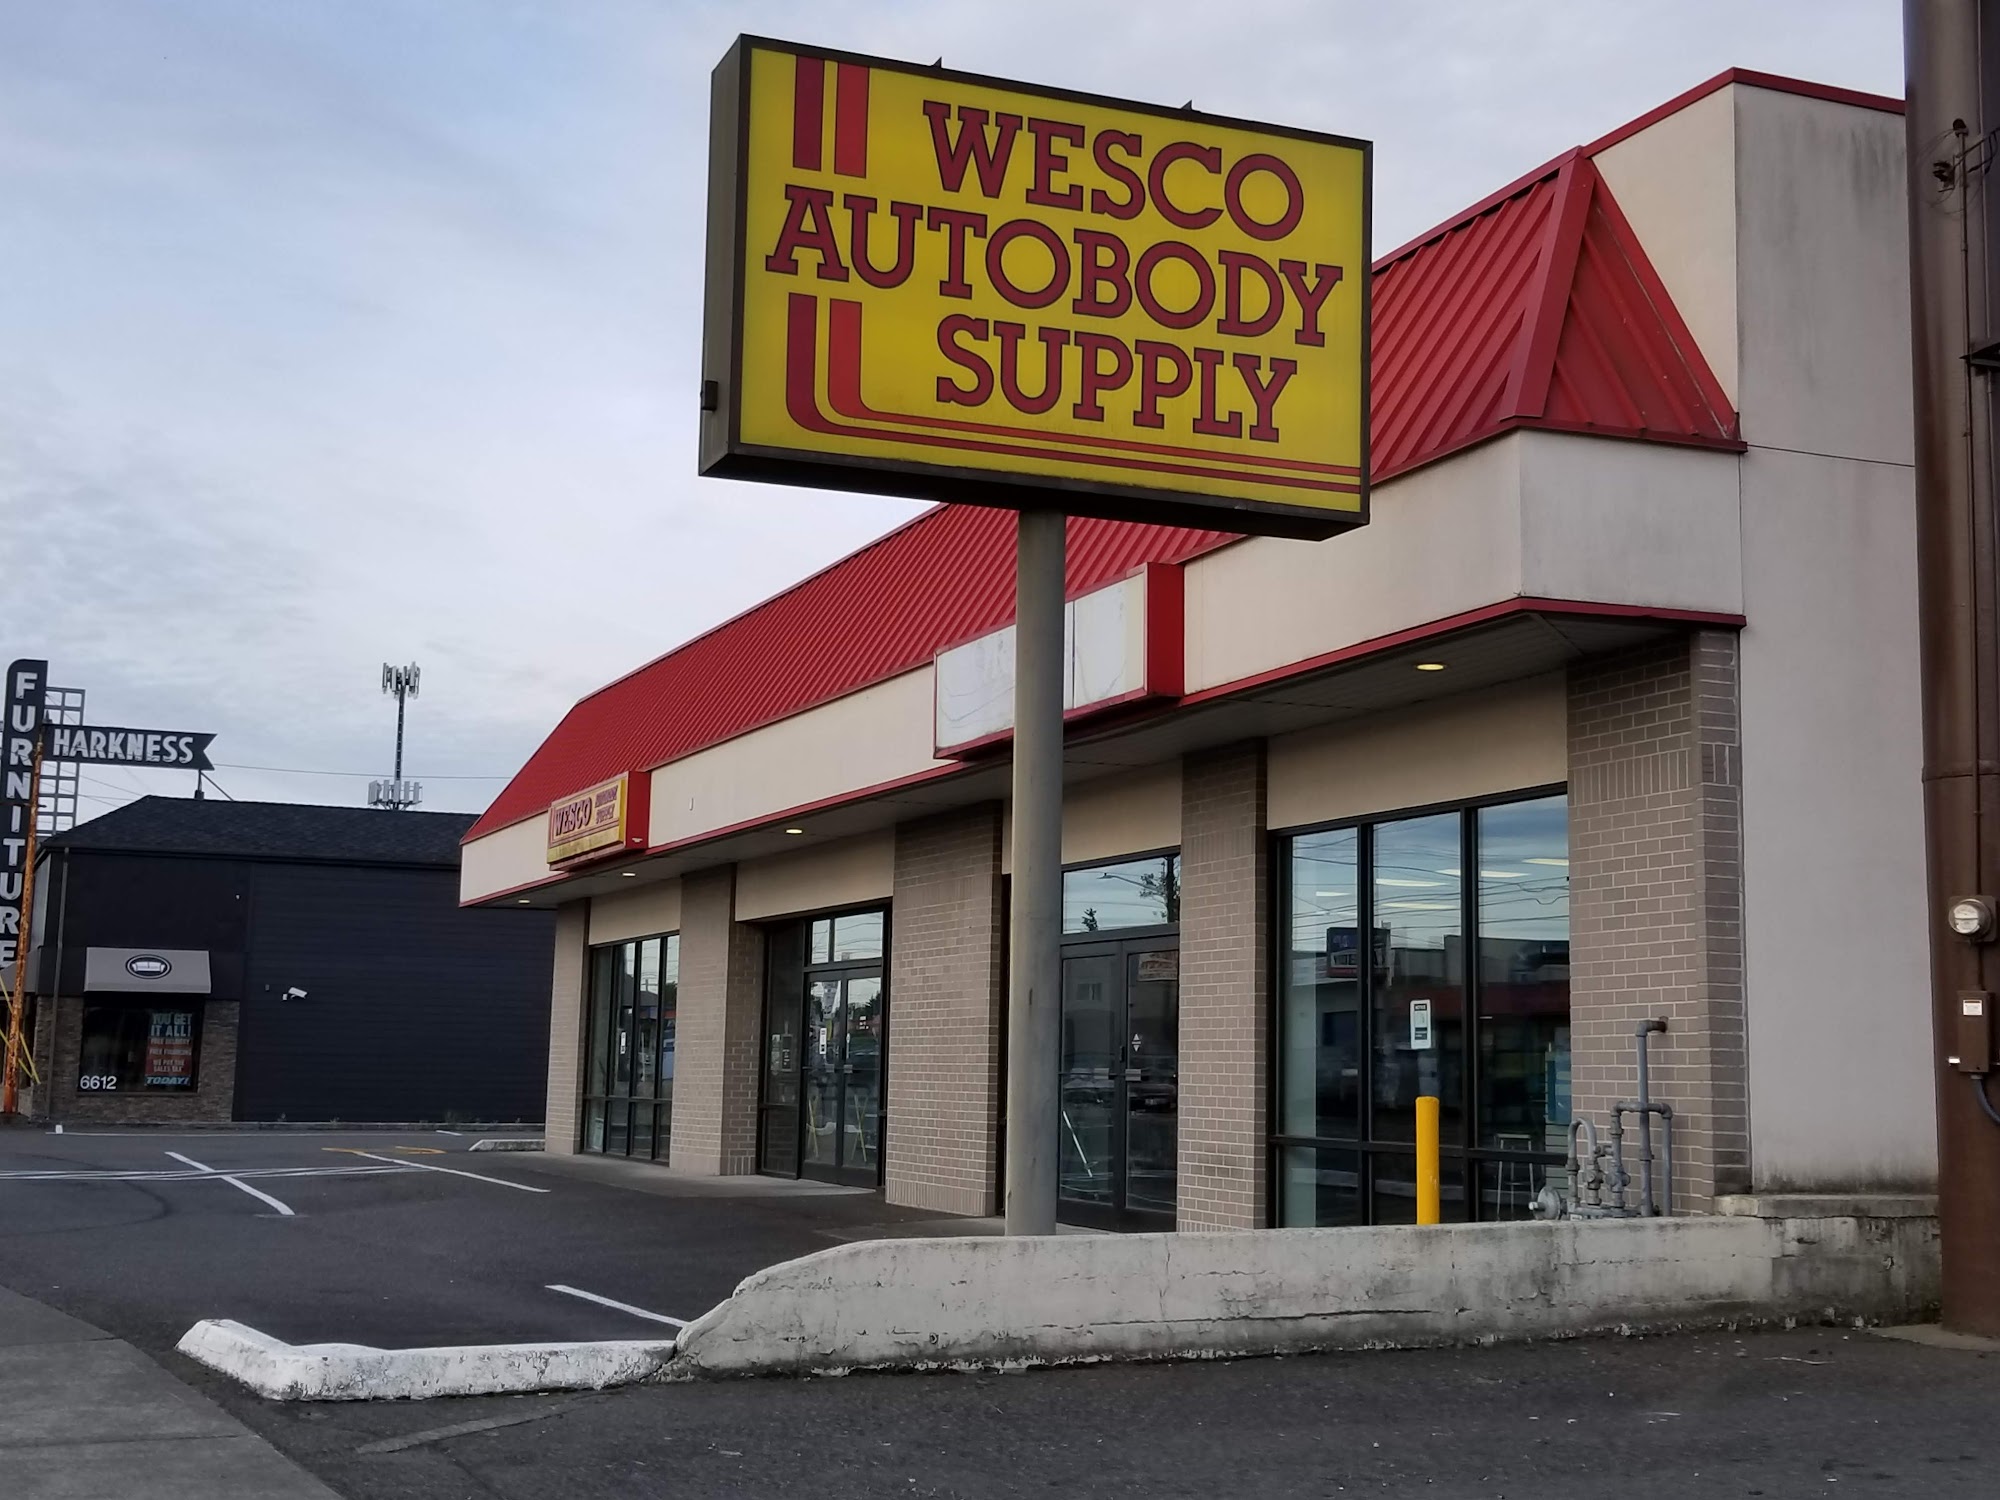 Wesco Autobody Supply